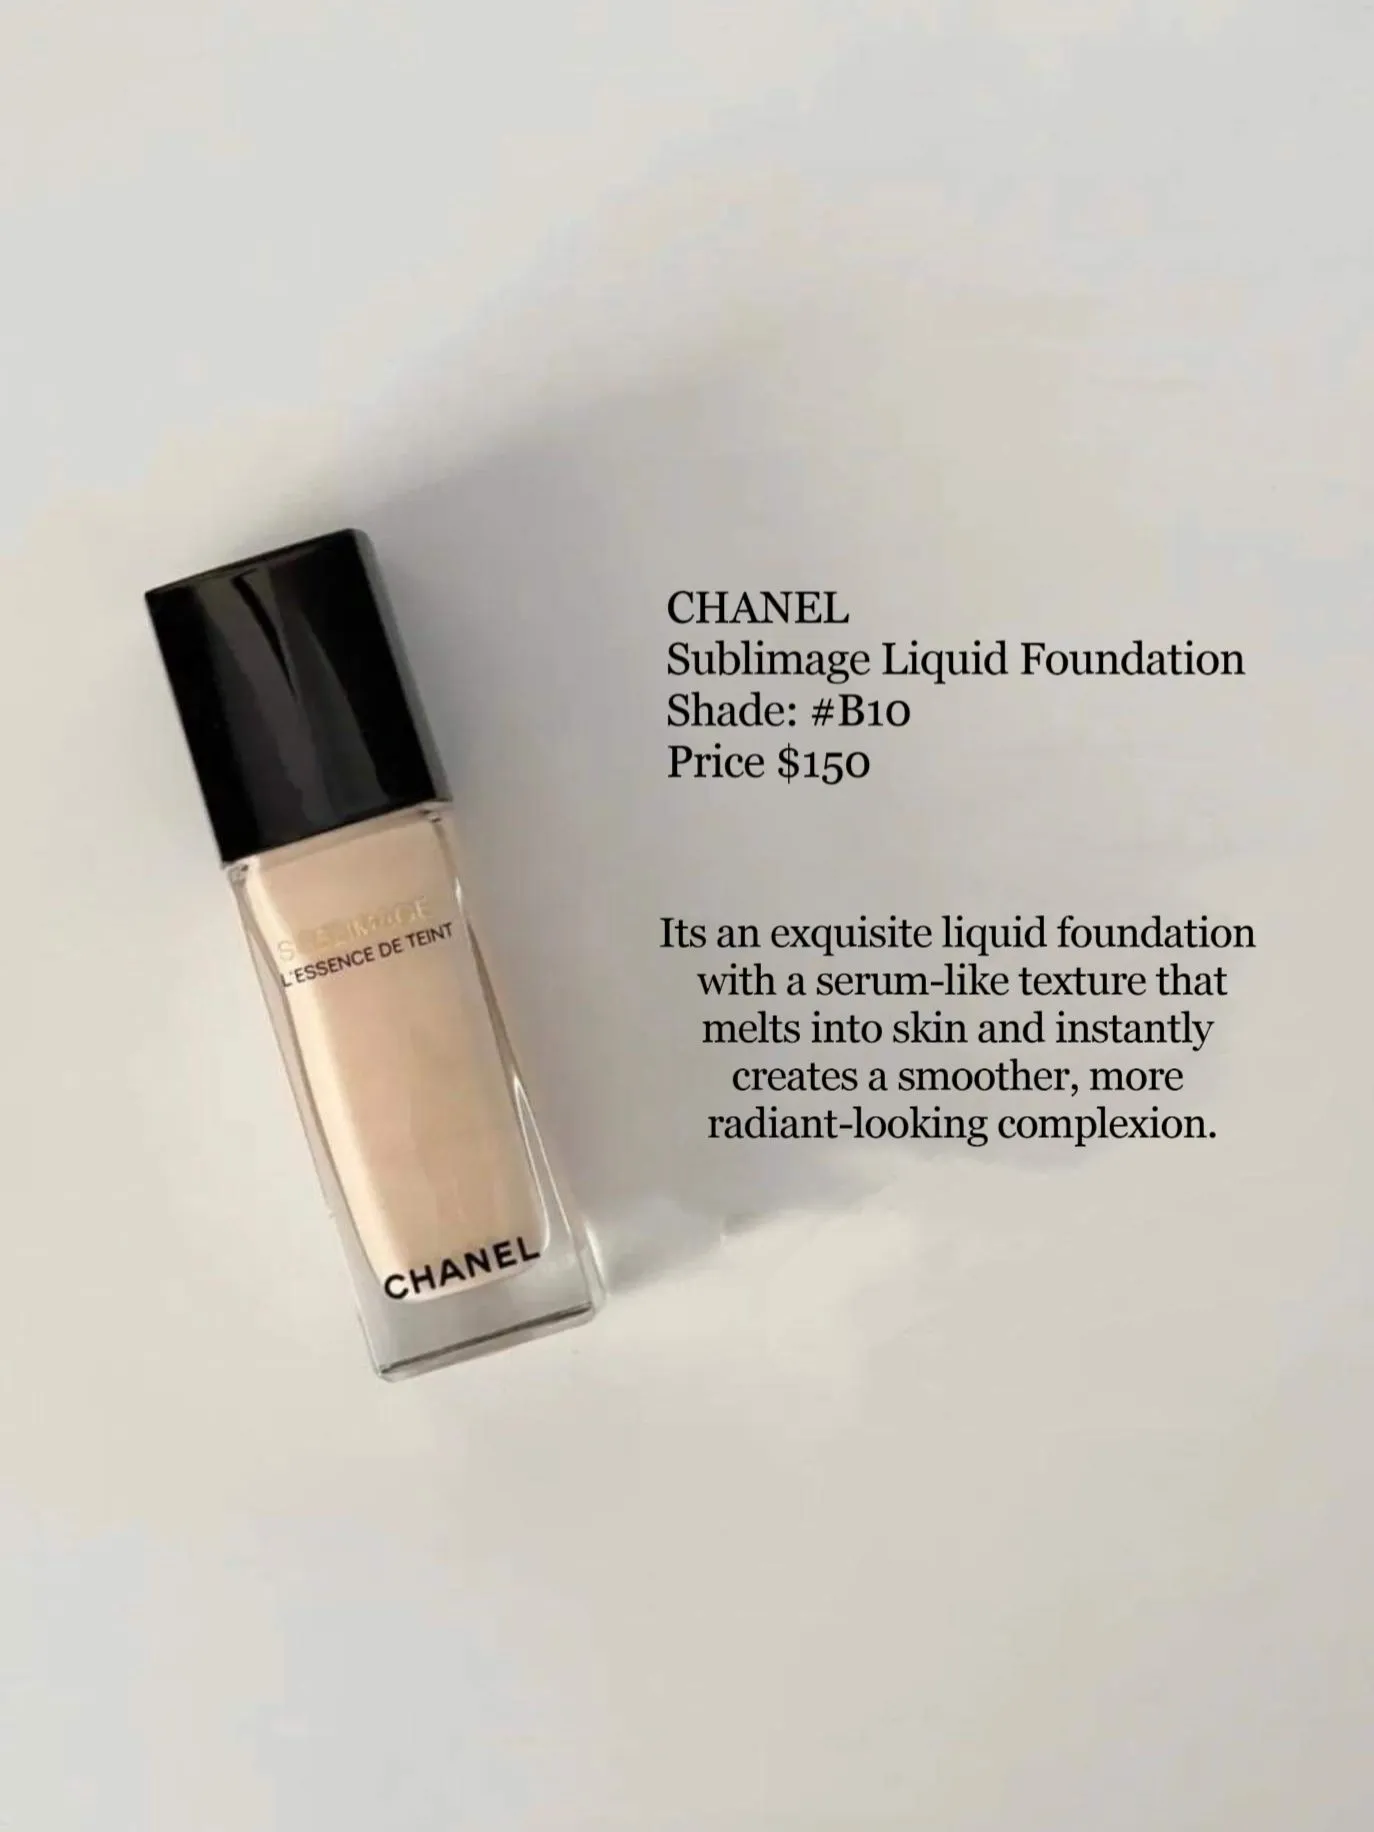 Chanel Sublimage New Creams